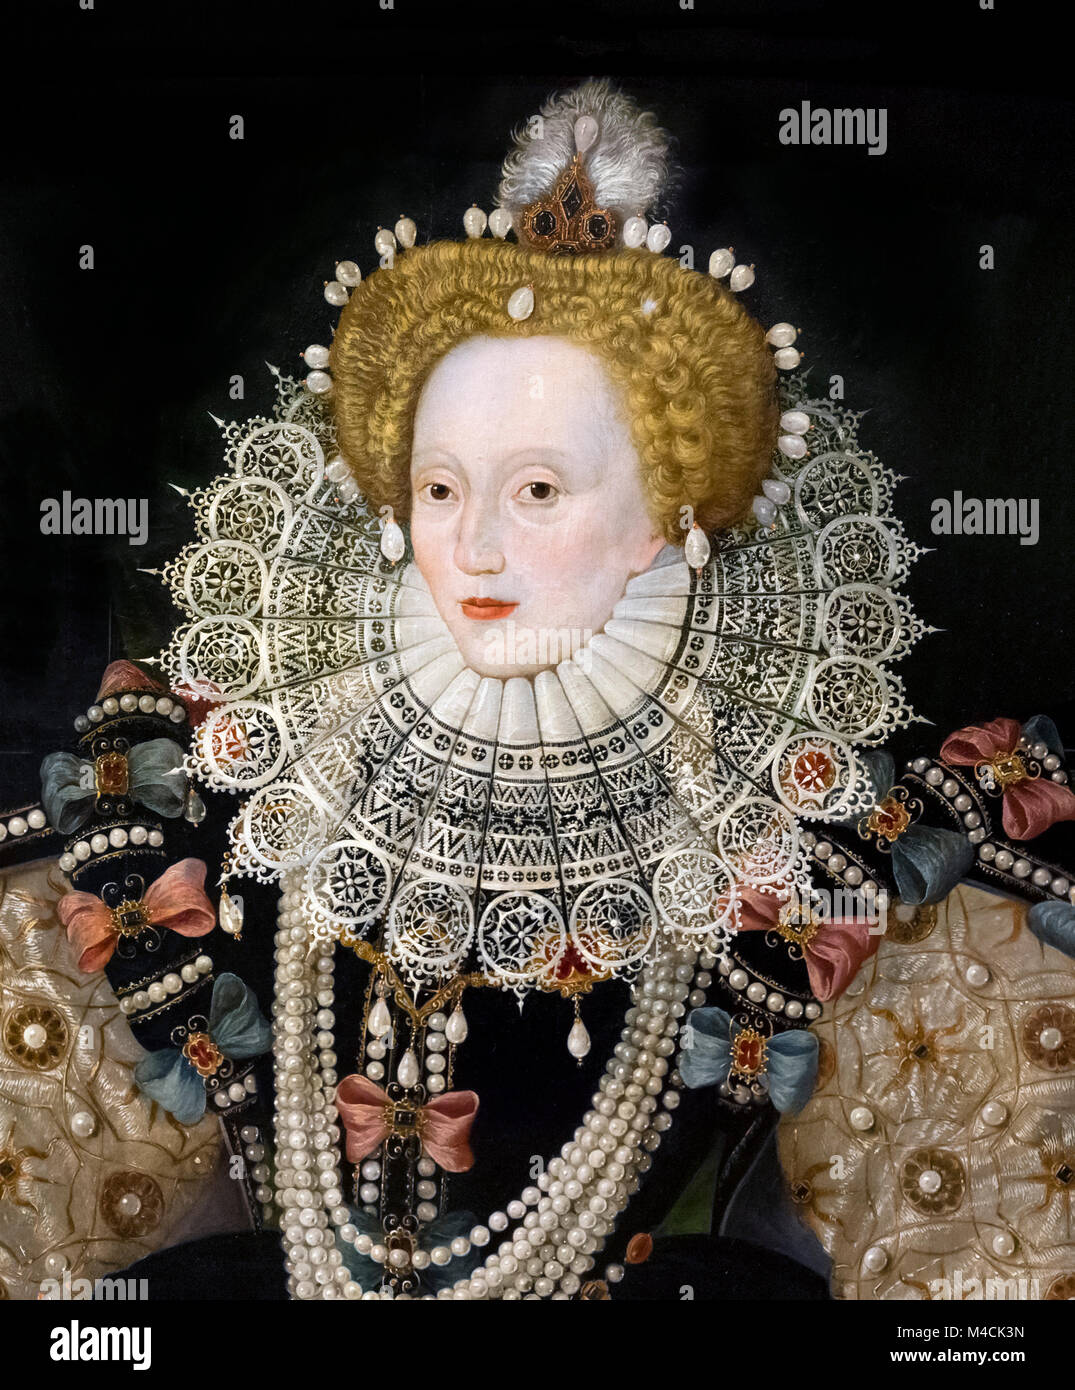 Isabel I, la "Armada vertical'. Retrato de la reina Isabel I por un artista desconocido de la escuela inglesa, óleo sobre panel, c.1588. Detalle de una pintura de mayor tamaño, M4CK3P. Foto de stock